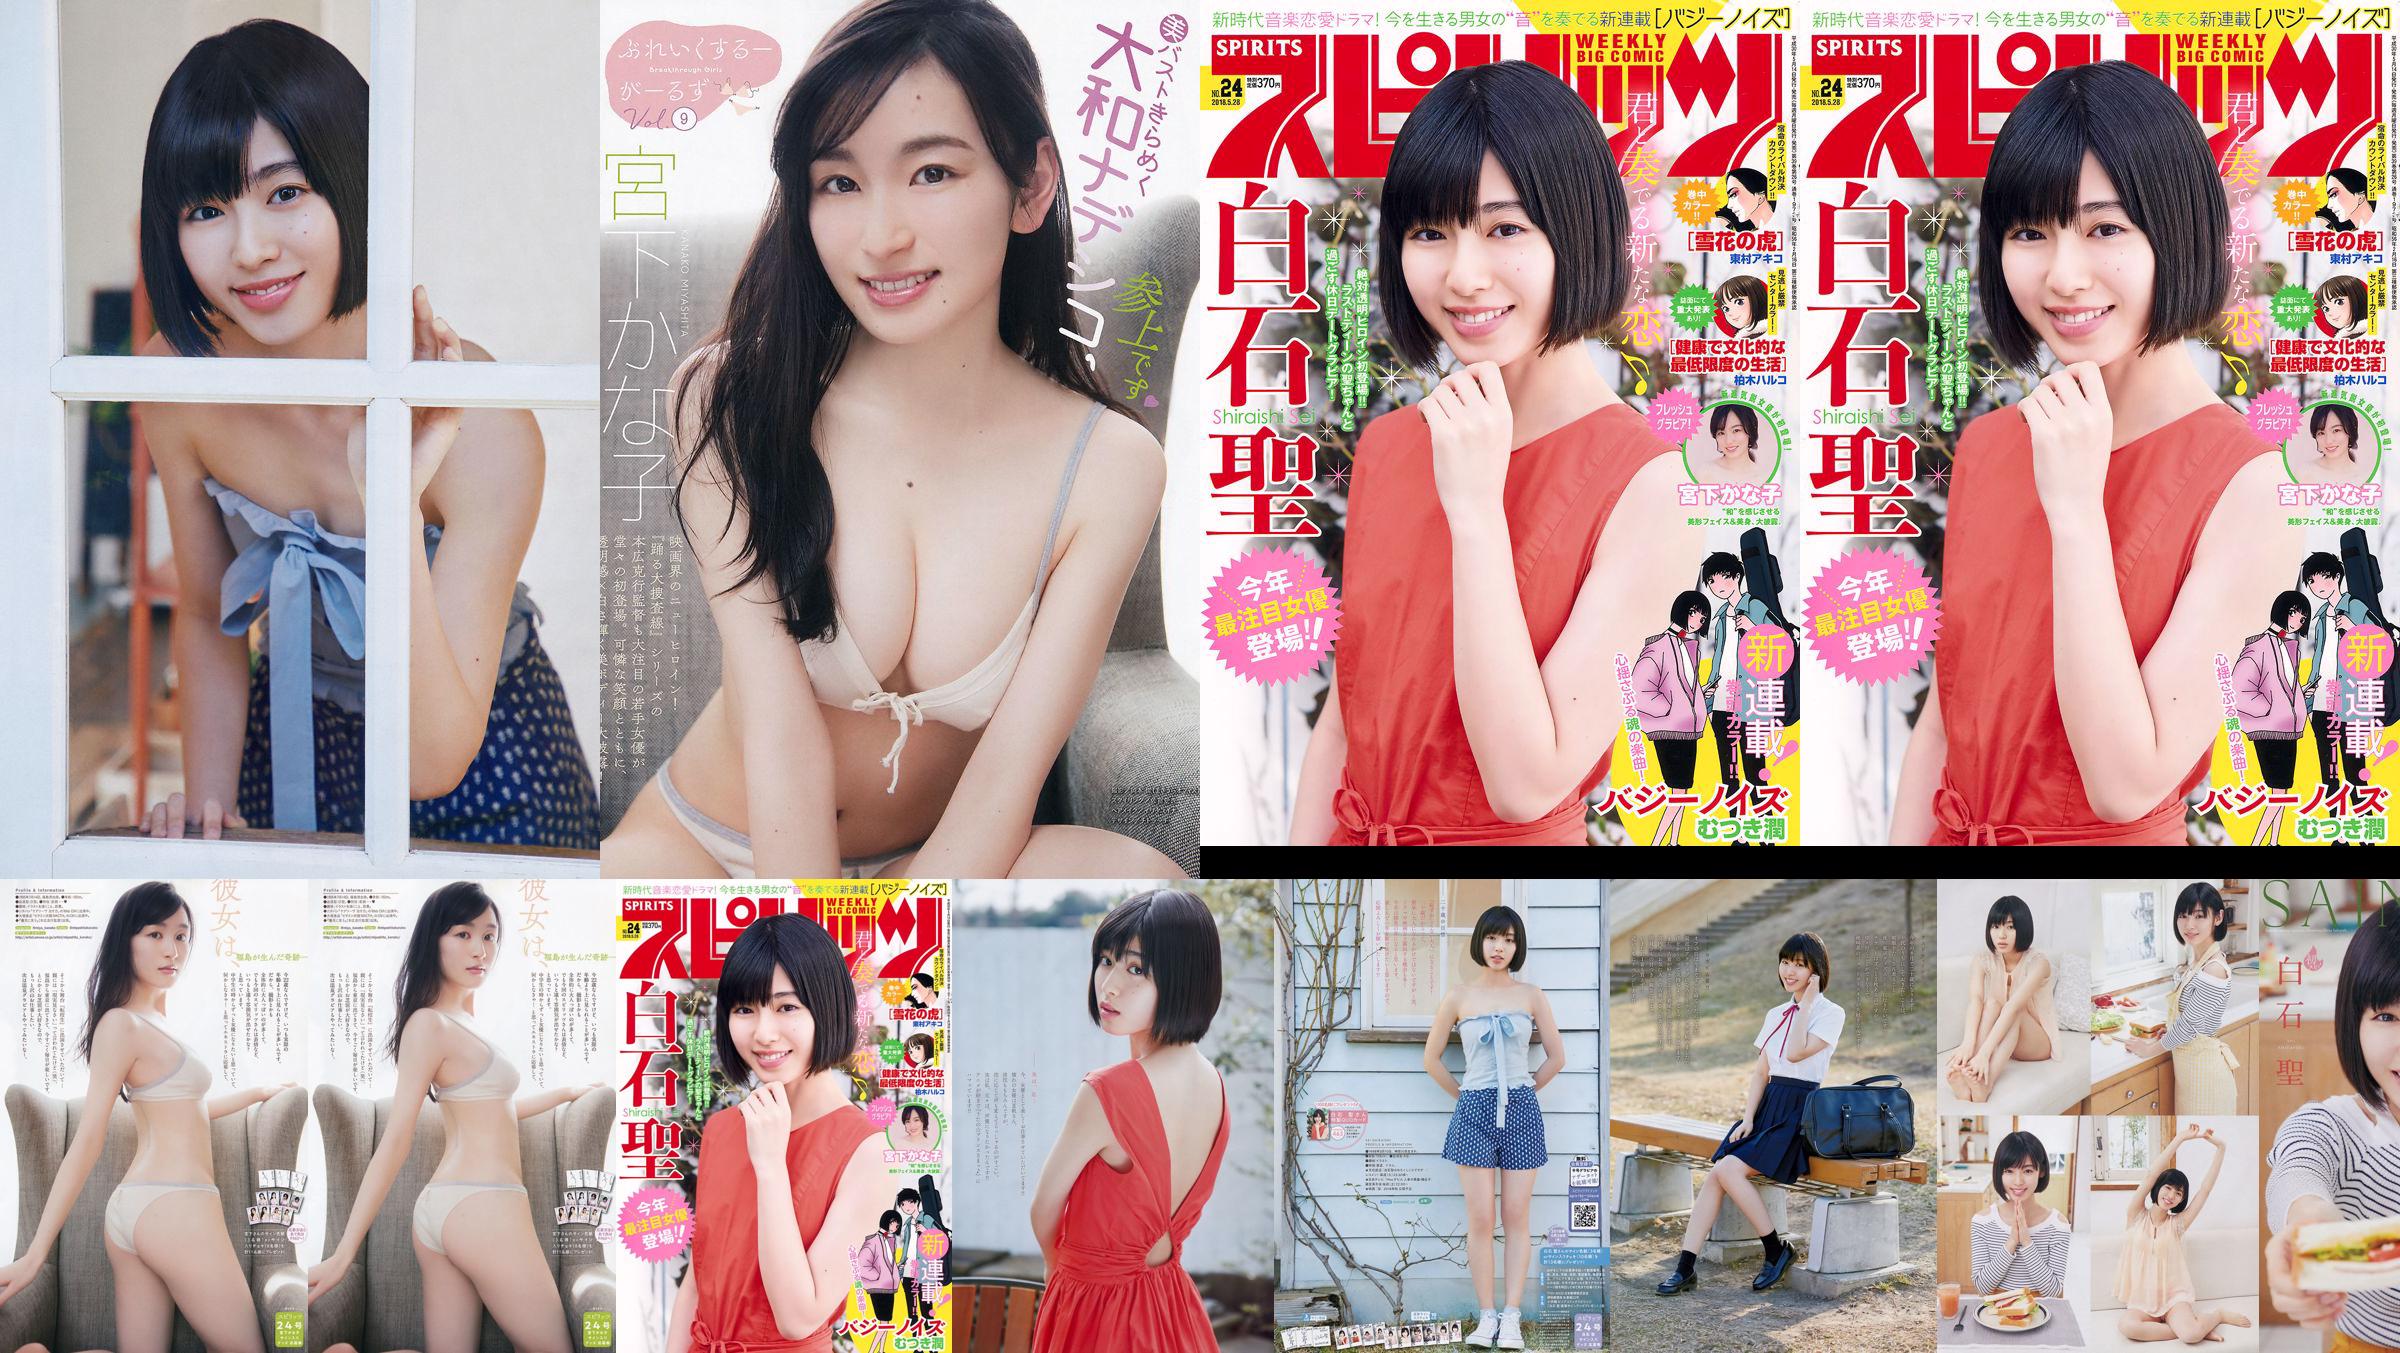 Юрия Кизаки Нана Окада AKB48 Under Girls [Weekly Young Jump] 2015 № 36-37 Фото No.a76582 Страница 5